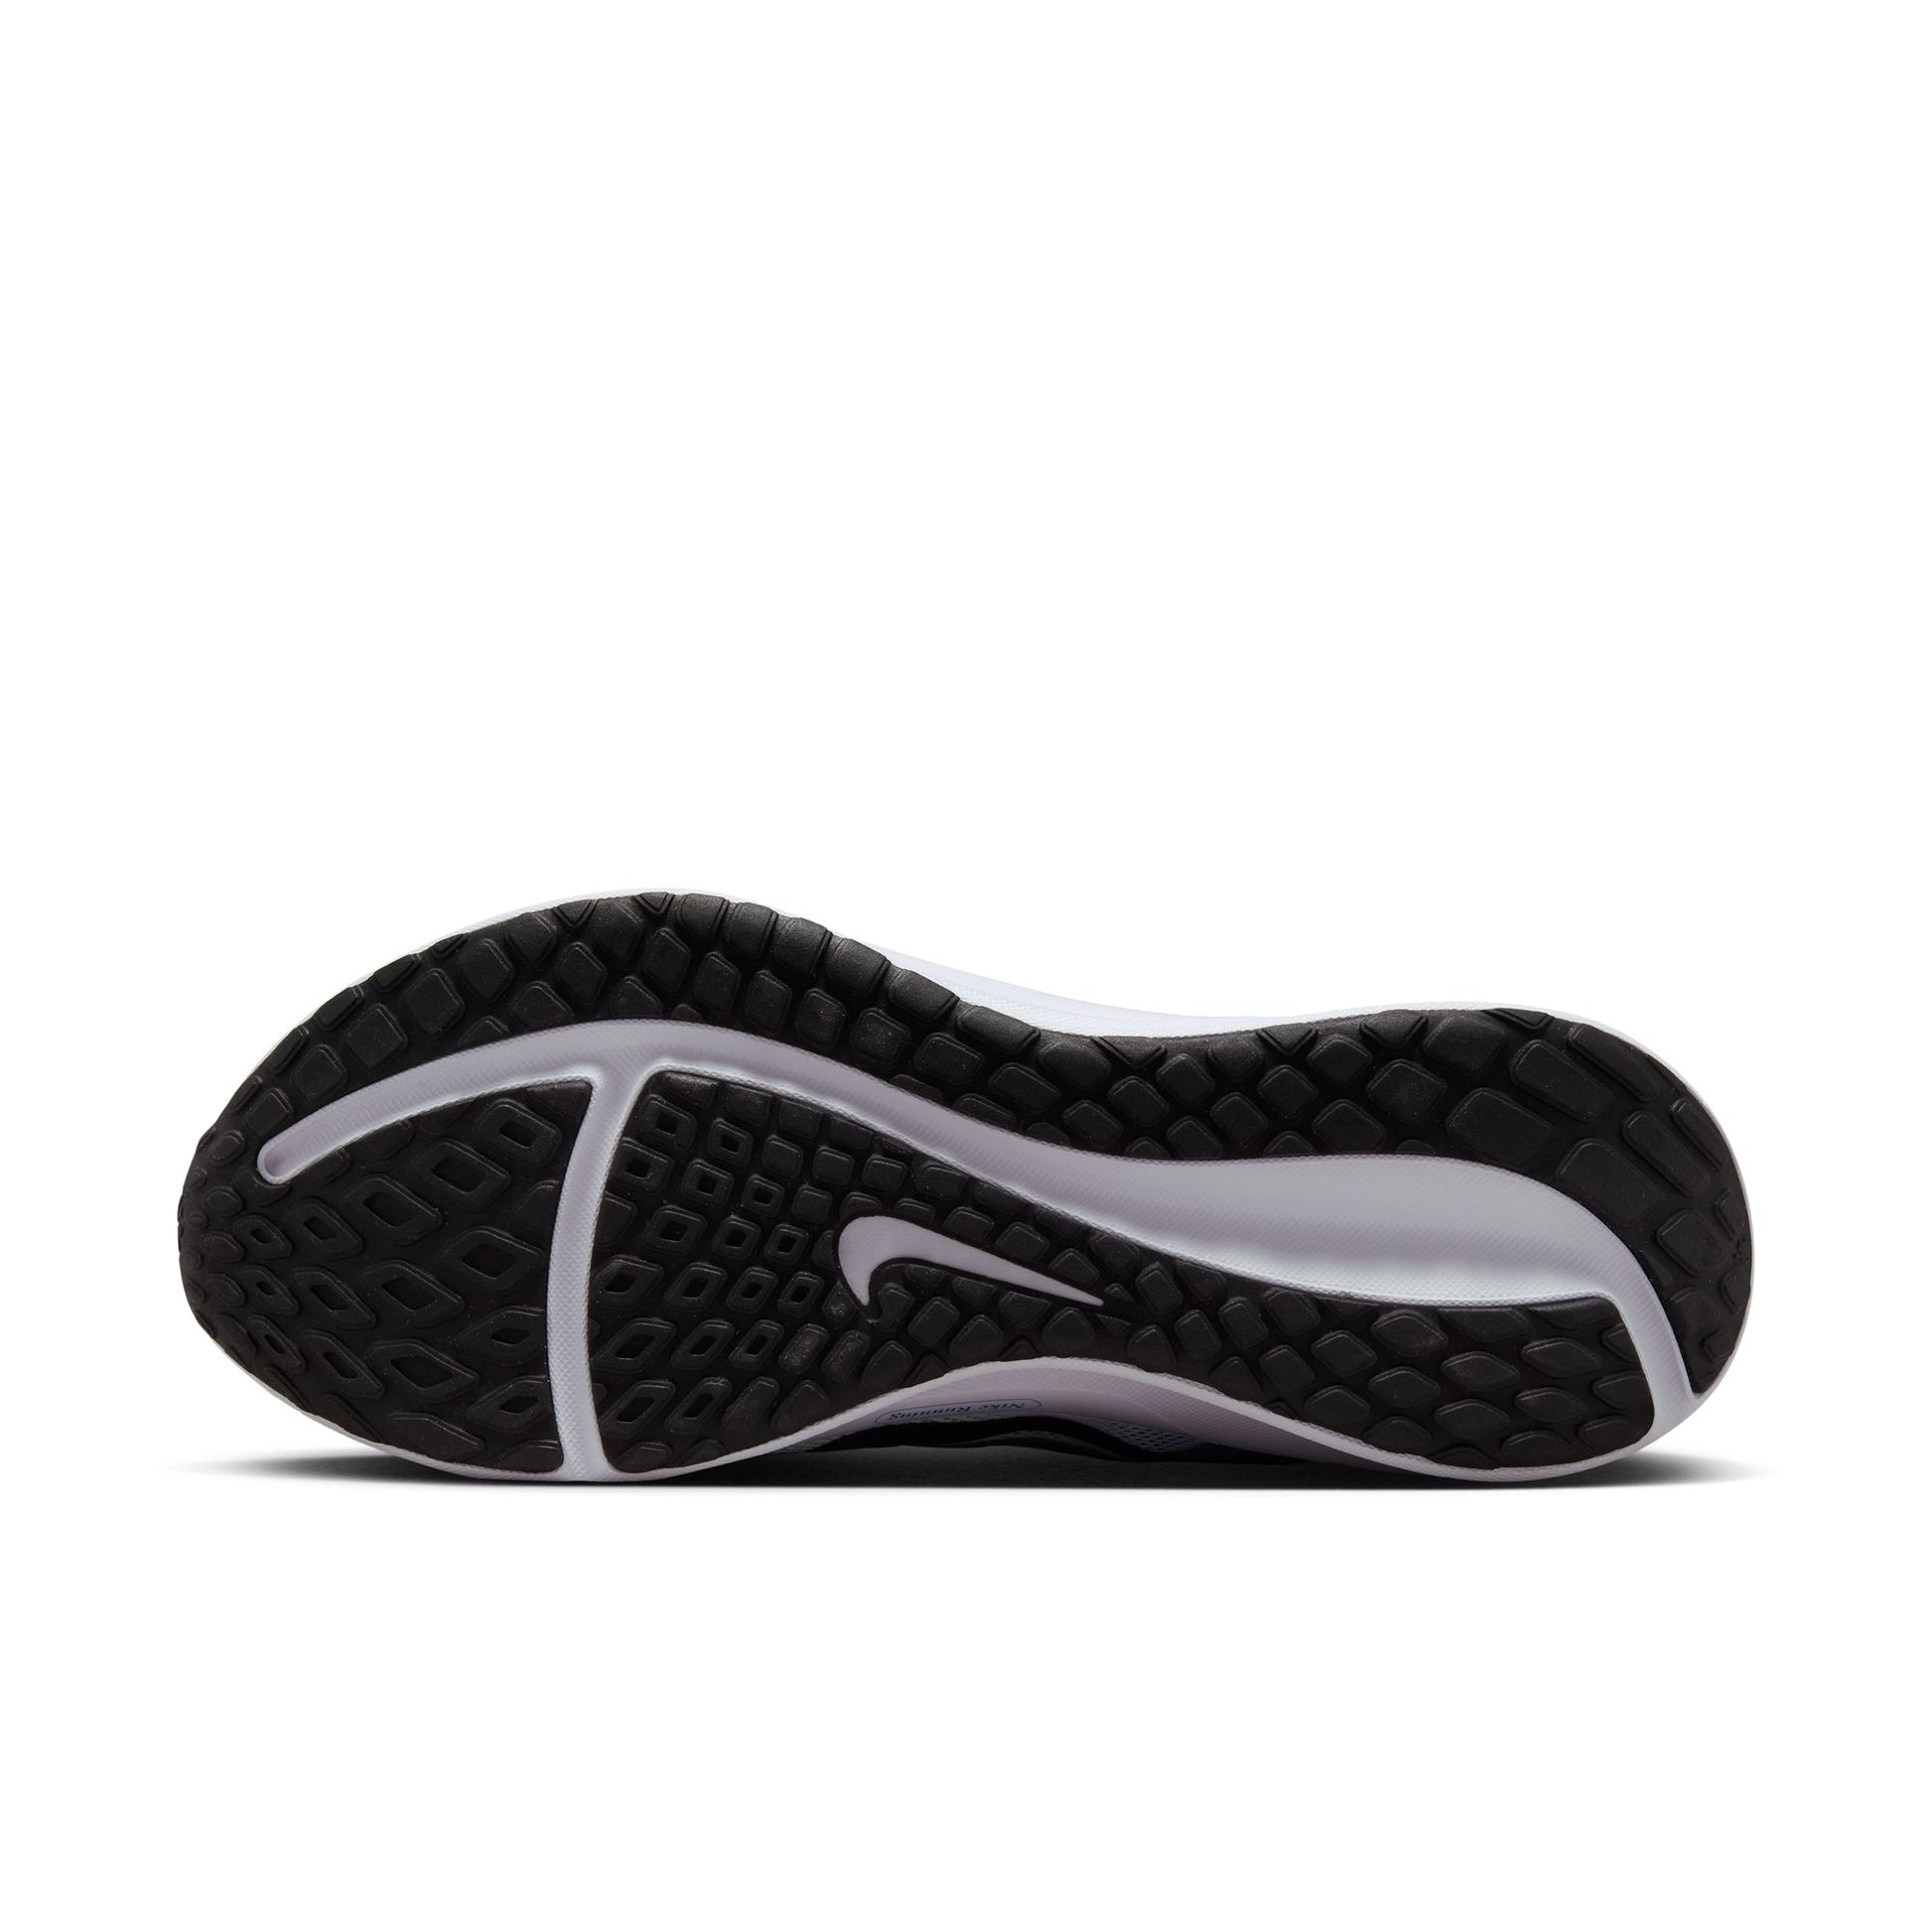 נעלי ספורט לגברים DOWNSHIFTER 13 בצבע לבן שחור וכחול